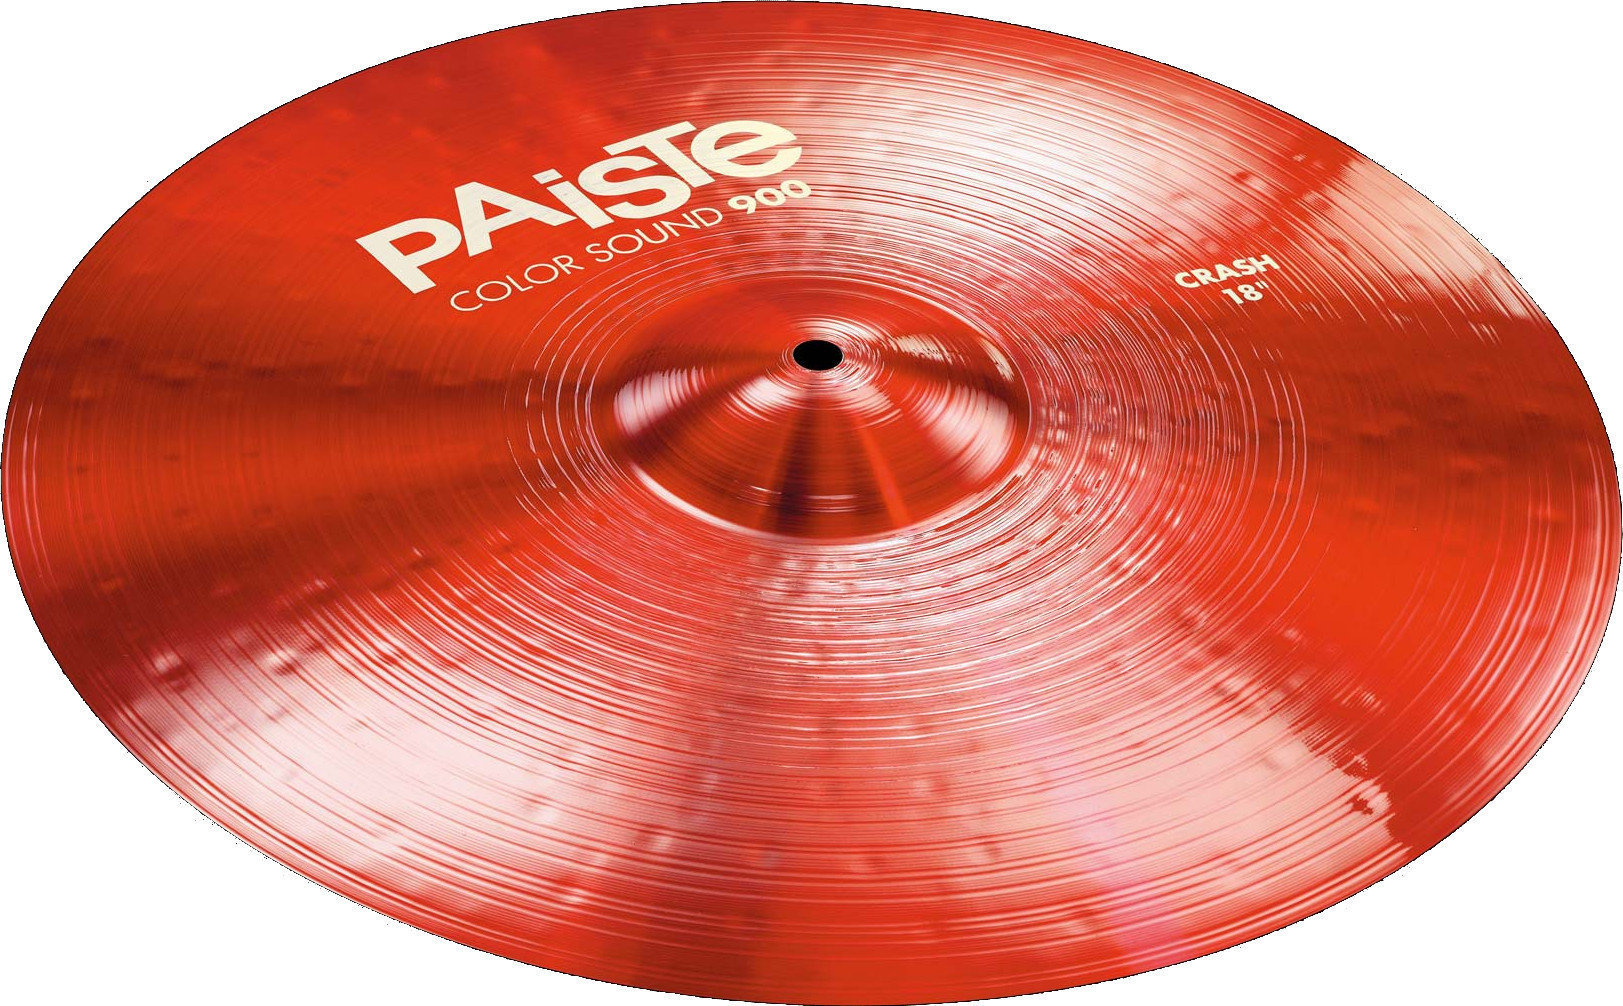 Crash Cymbal Paiste Color Sound 900 Crash Cymbal 20" Röd